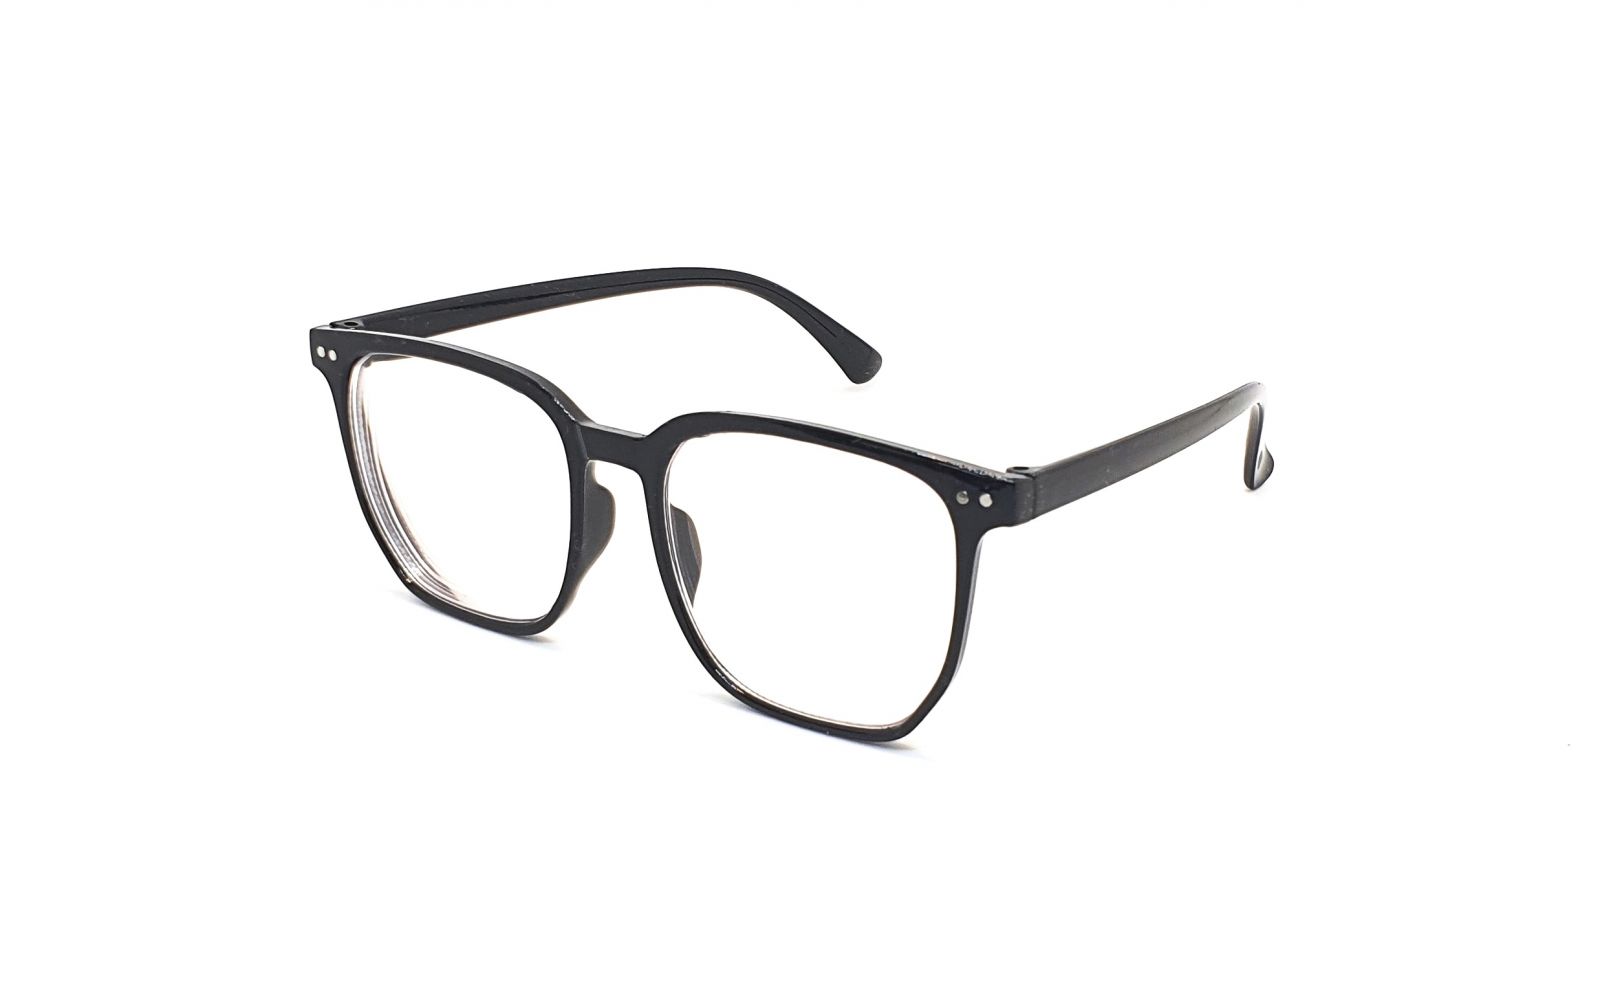 Samozabarvovací dioptrické brýle F24 / -5,00 black